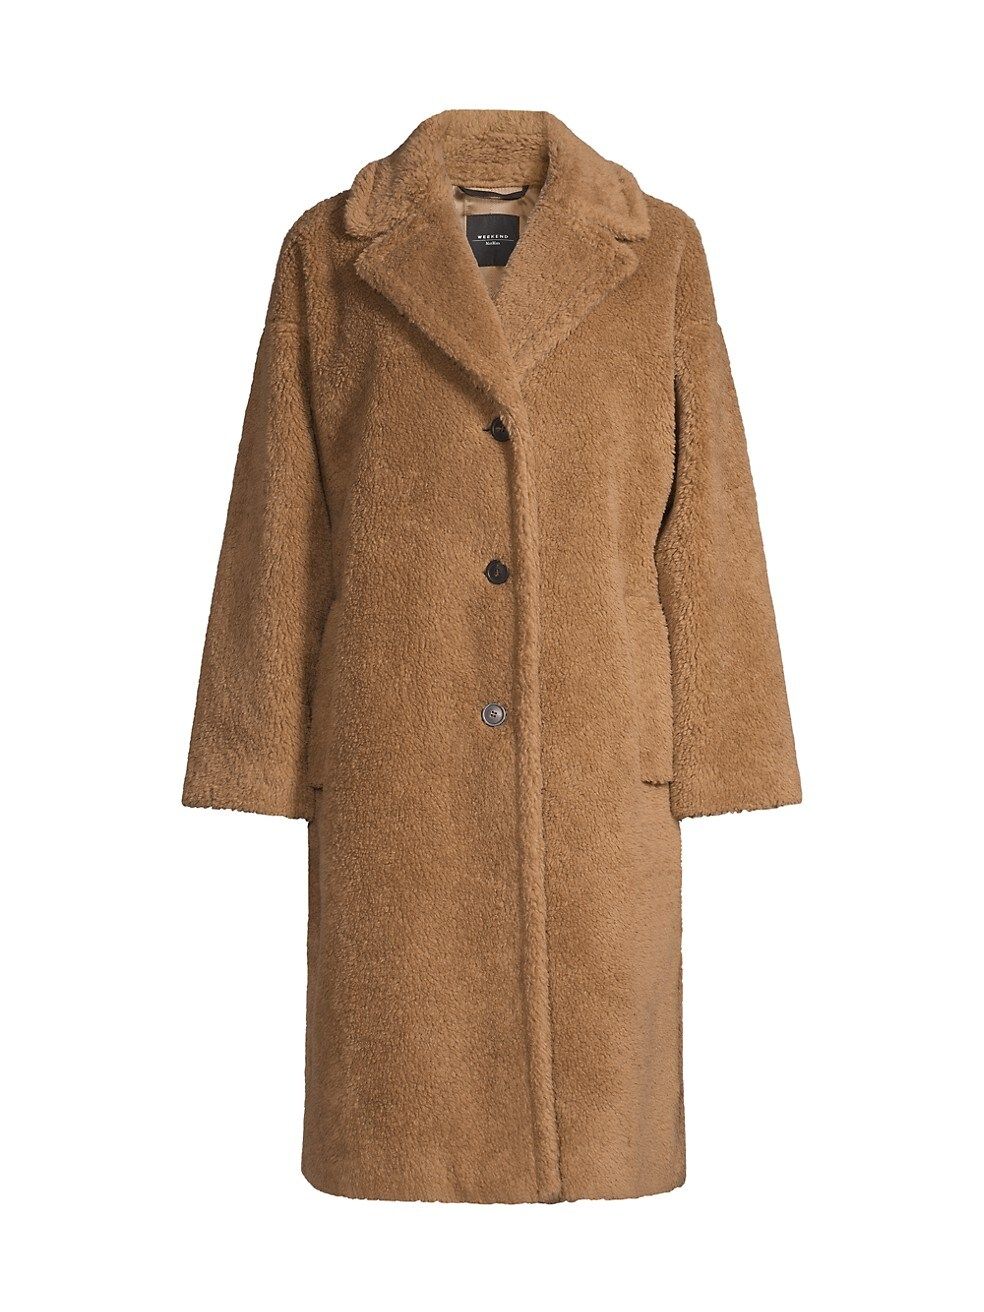 Weekend Max Mara Salmone Teddy Long Coat | Saks Fifth Avenue